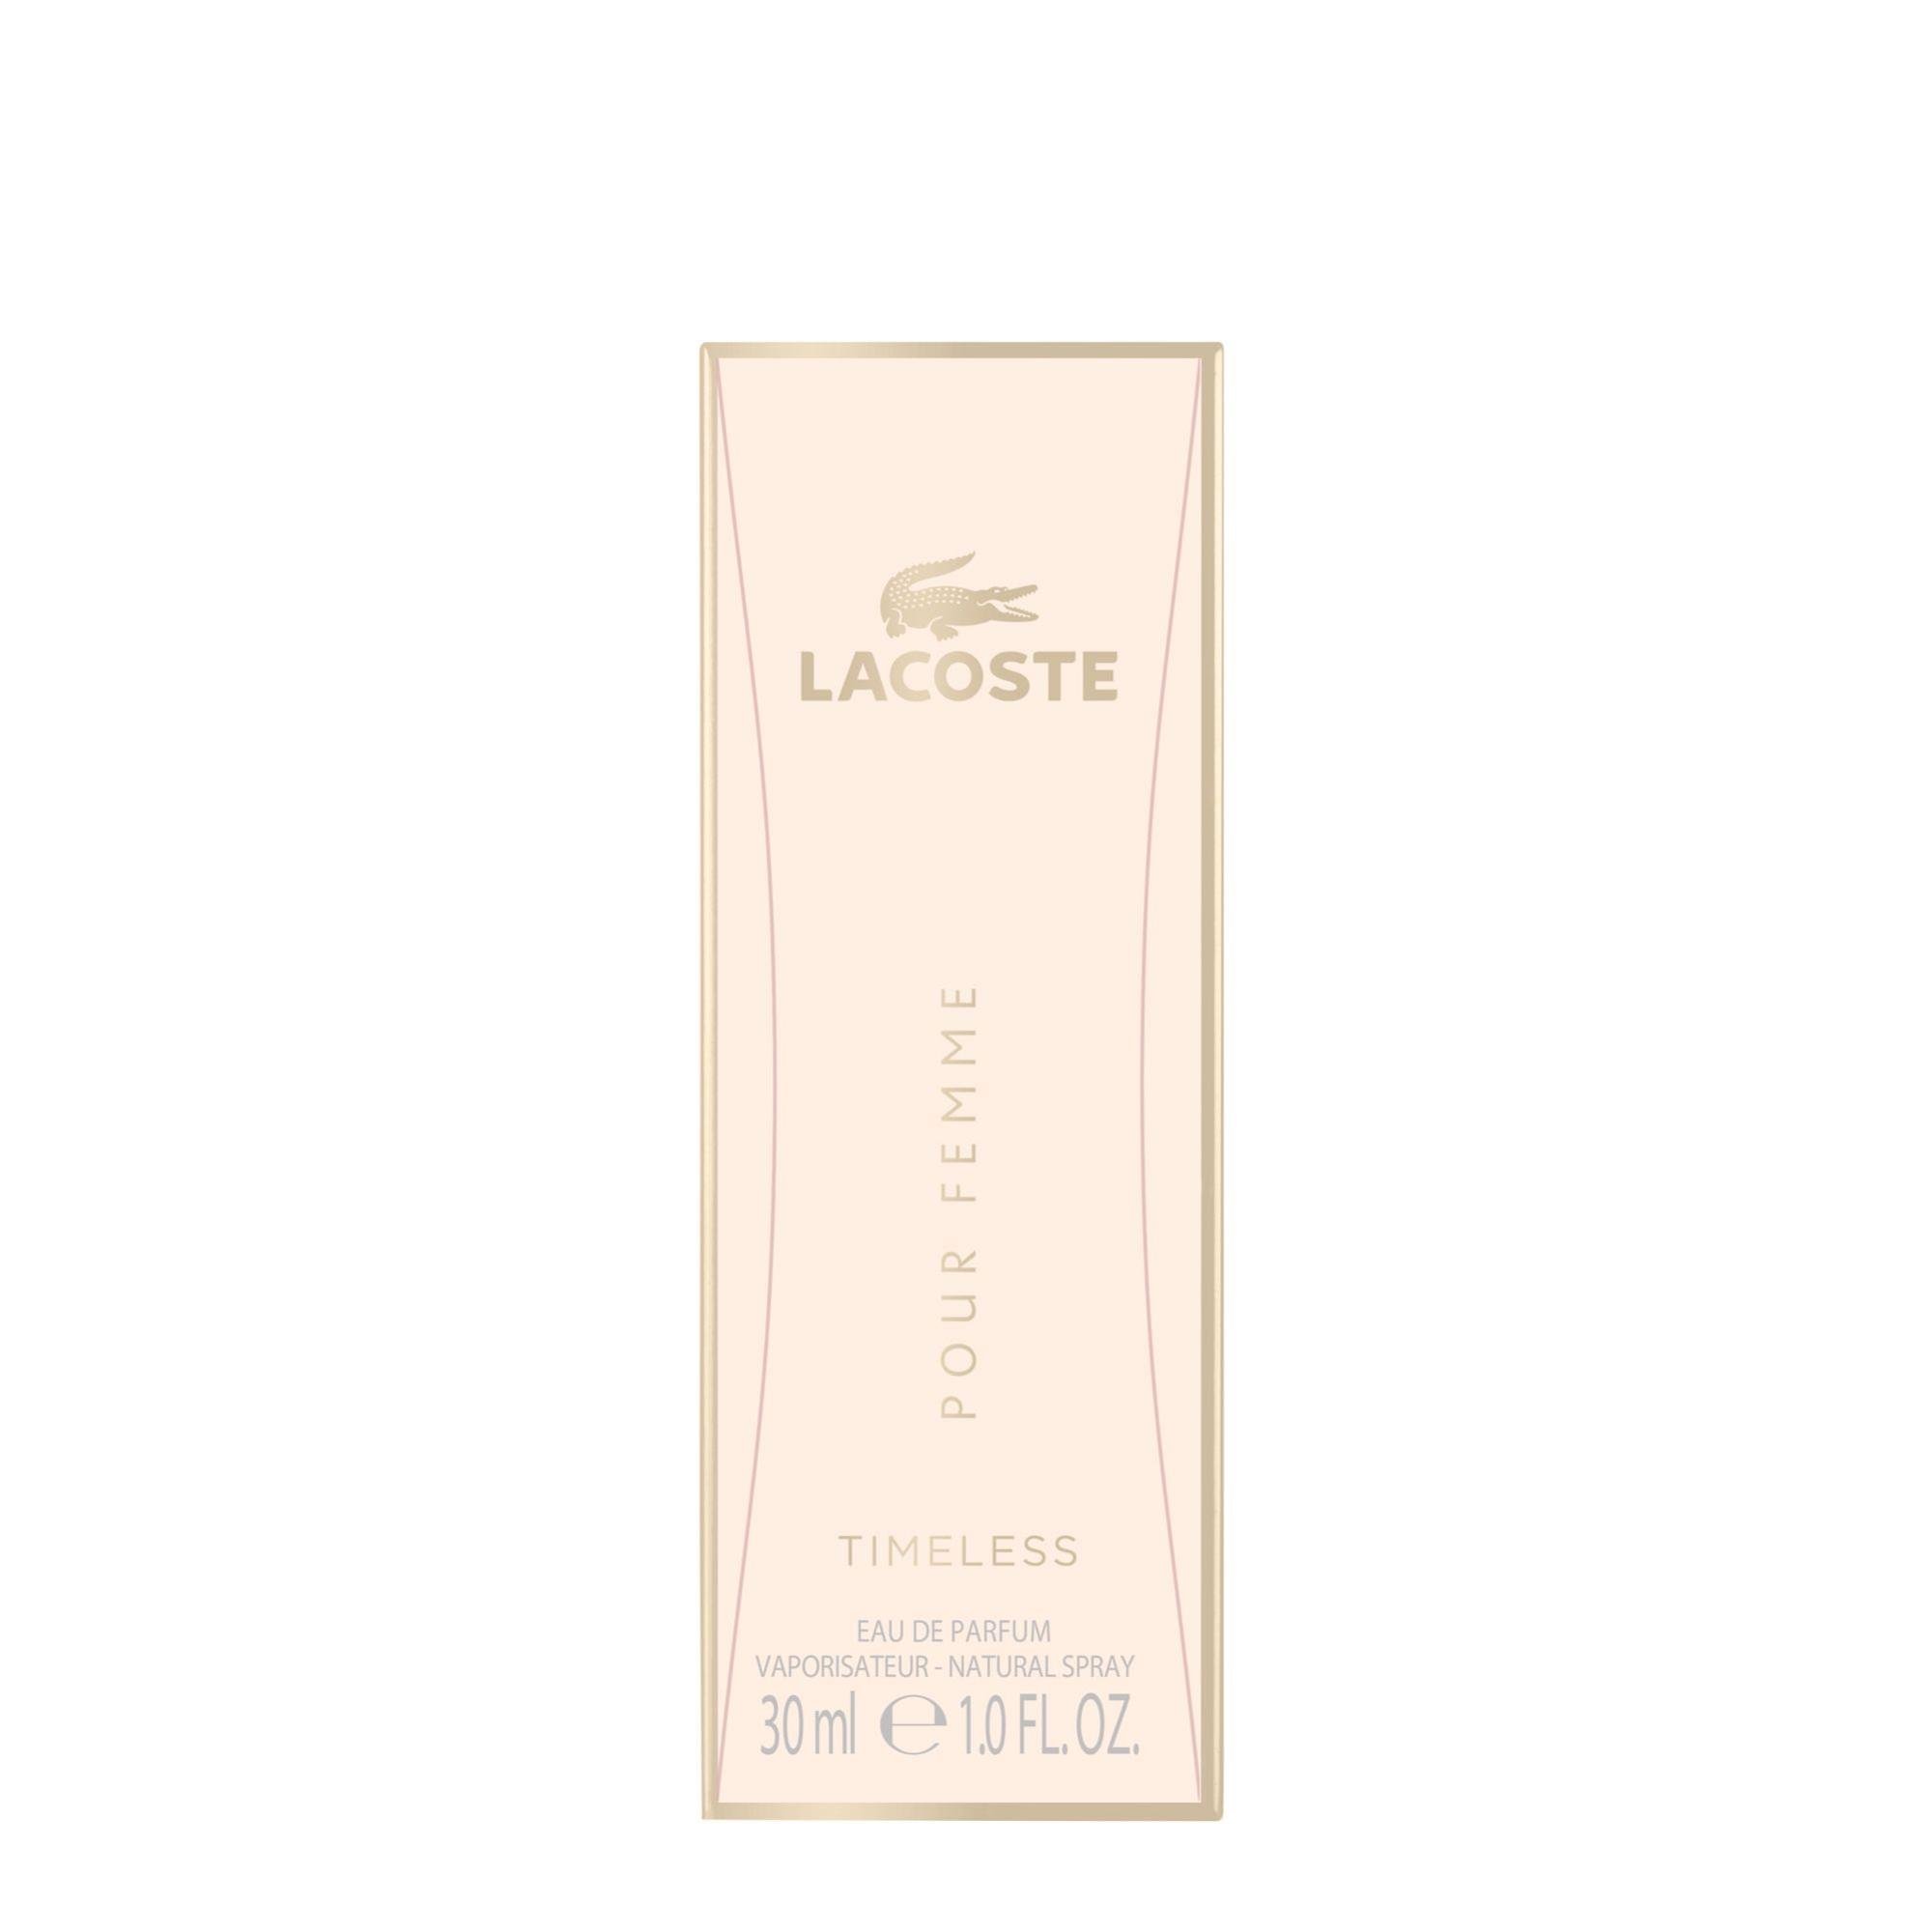 Lacoste Pour Femme Timeless Eau de Parfum 30ml